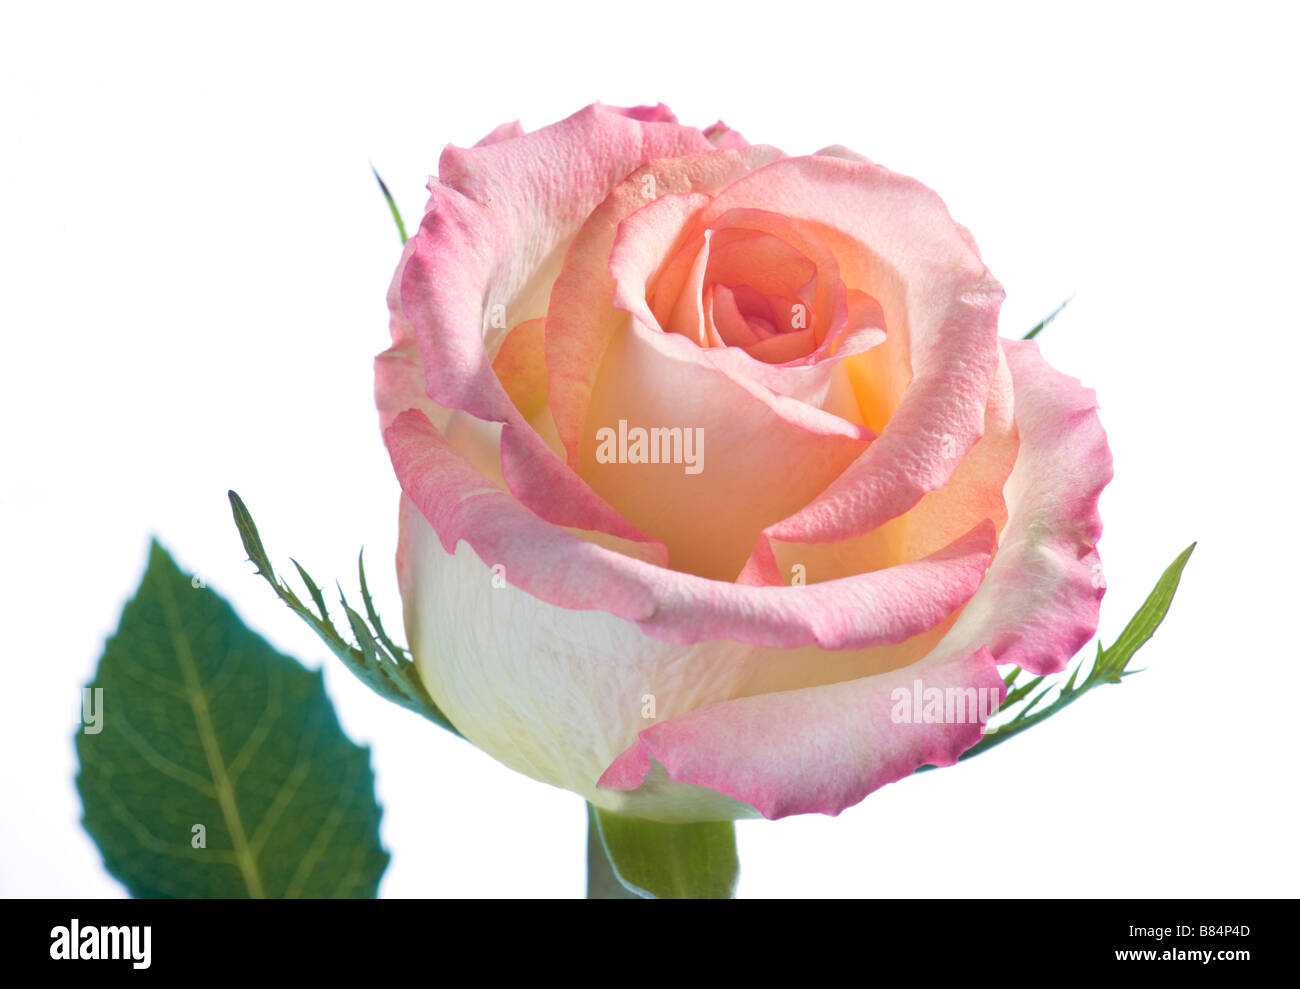 Rosa Bianco Giallo bouquet di rose fiore su sfondo bianco originale fragranza tini profumo aromatico presente regalo buon compleanno gre Foto Stock